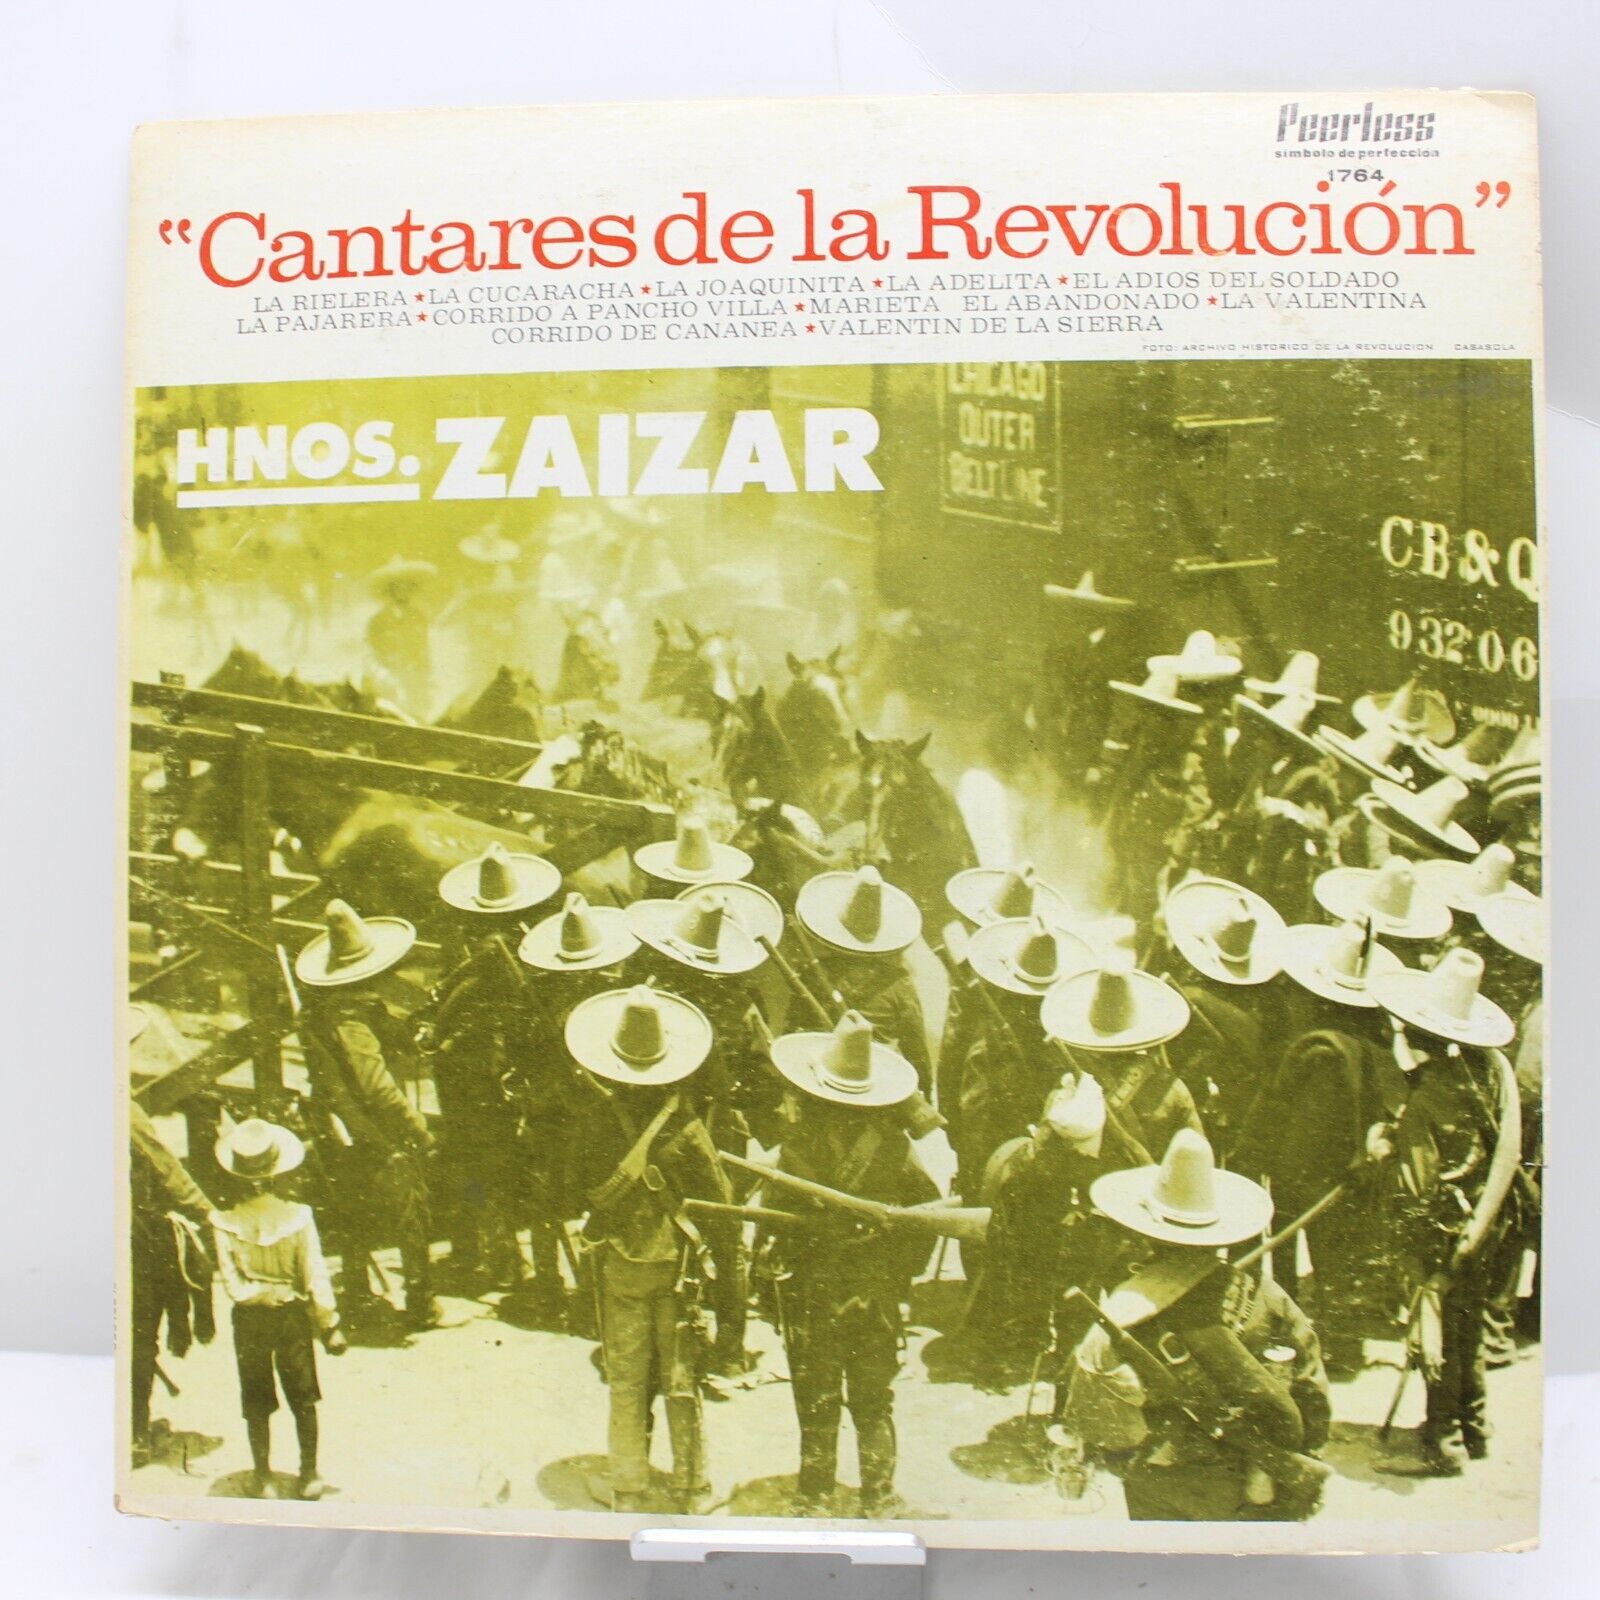 Cantares de la Revolucion Hermanos Zaizar Vintage Vinyl Record LP VG+ 1764